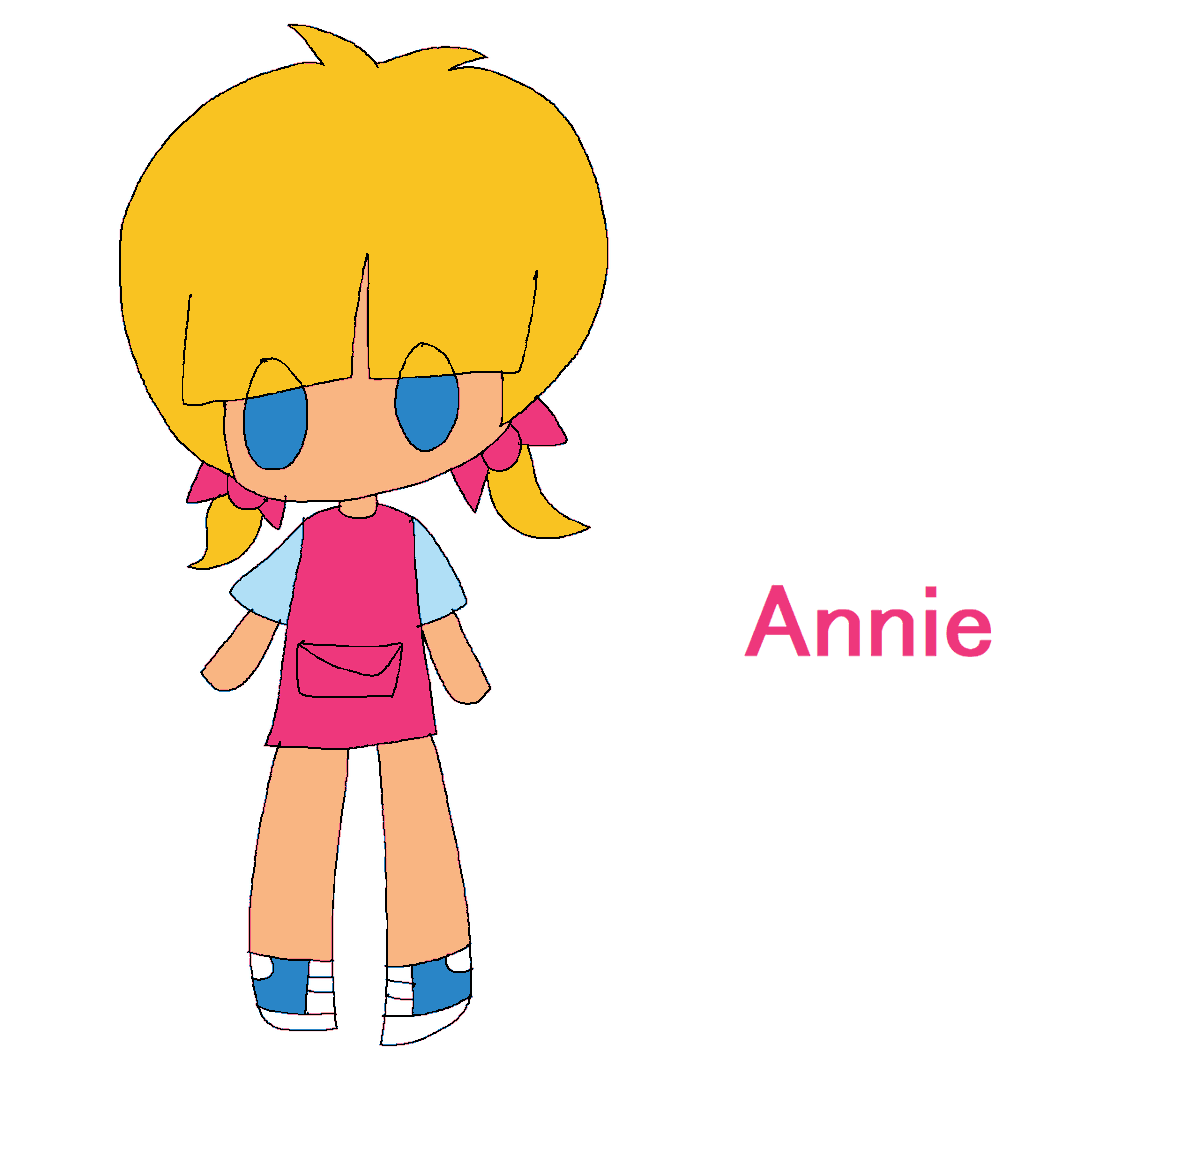 Annie!

#LittleEinsteins